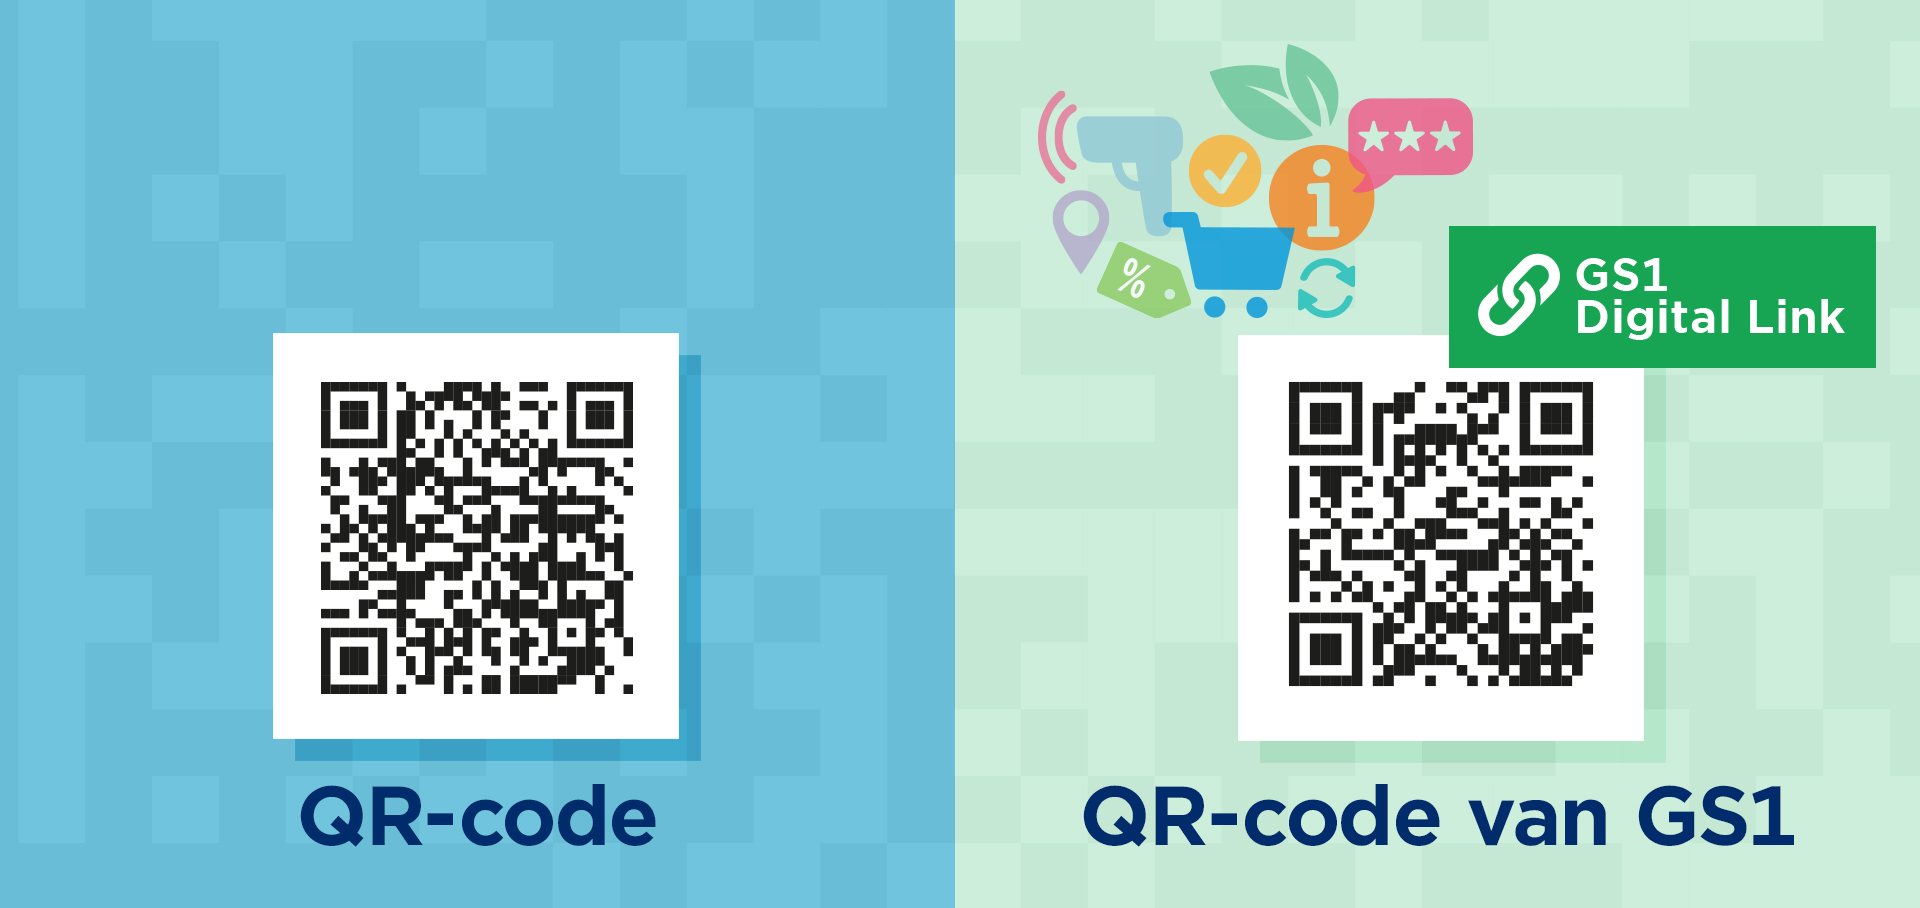 Het verschil tussen een ‘gewone’ QR-code en een ‘QR-code van GS1’ - Afbeelding Verschil QR Code V2